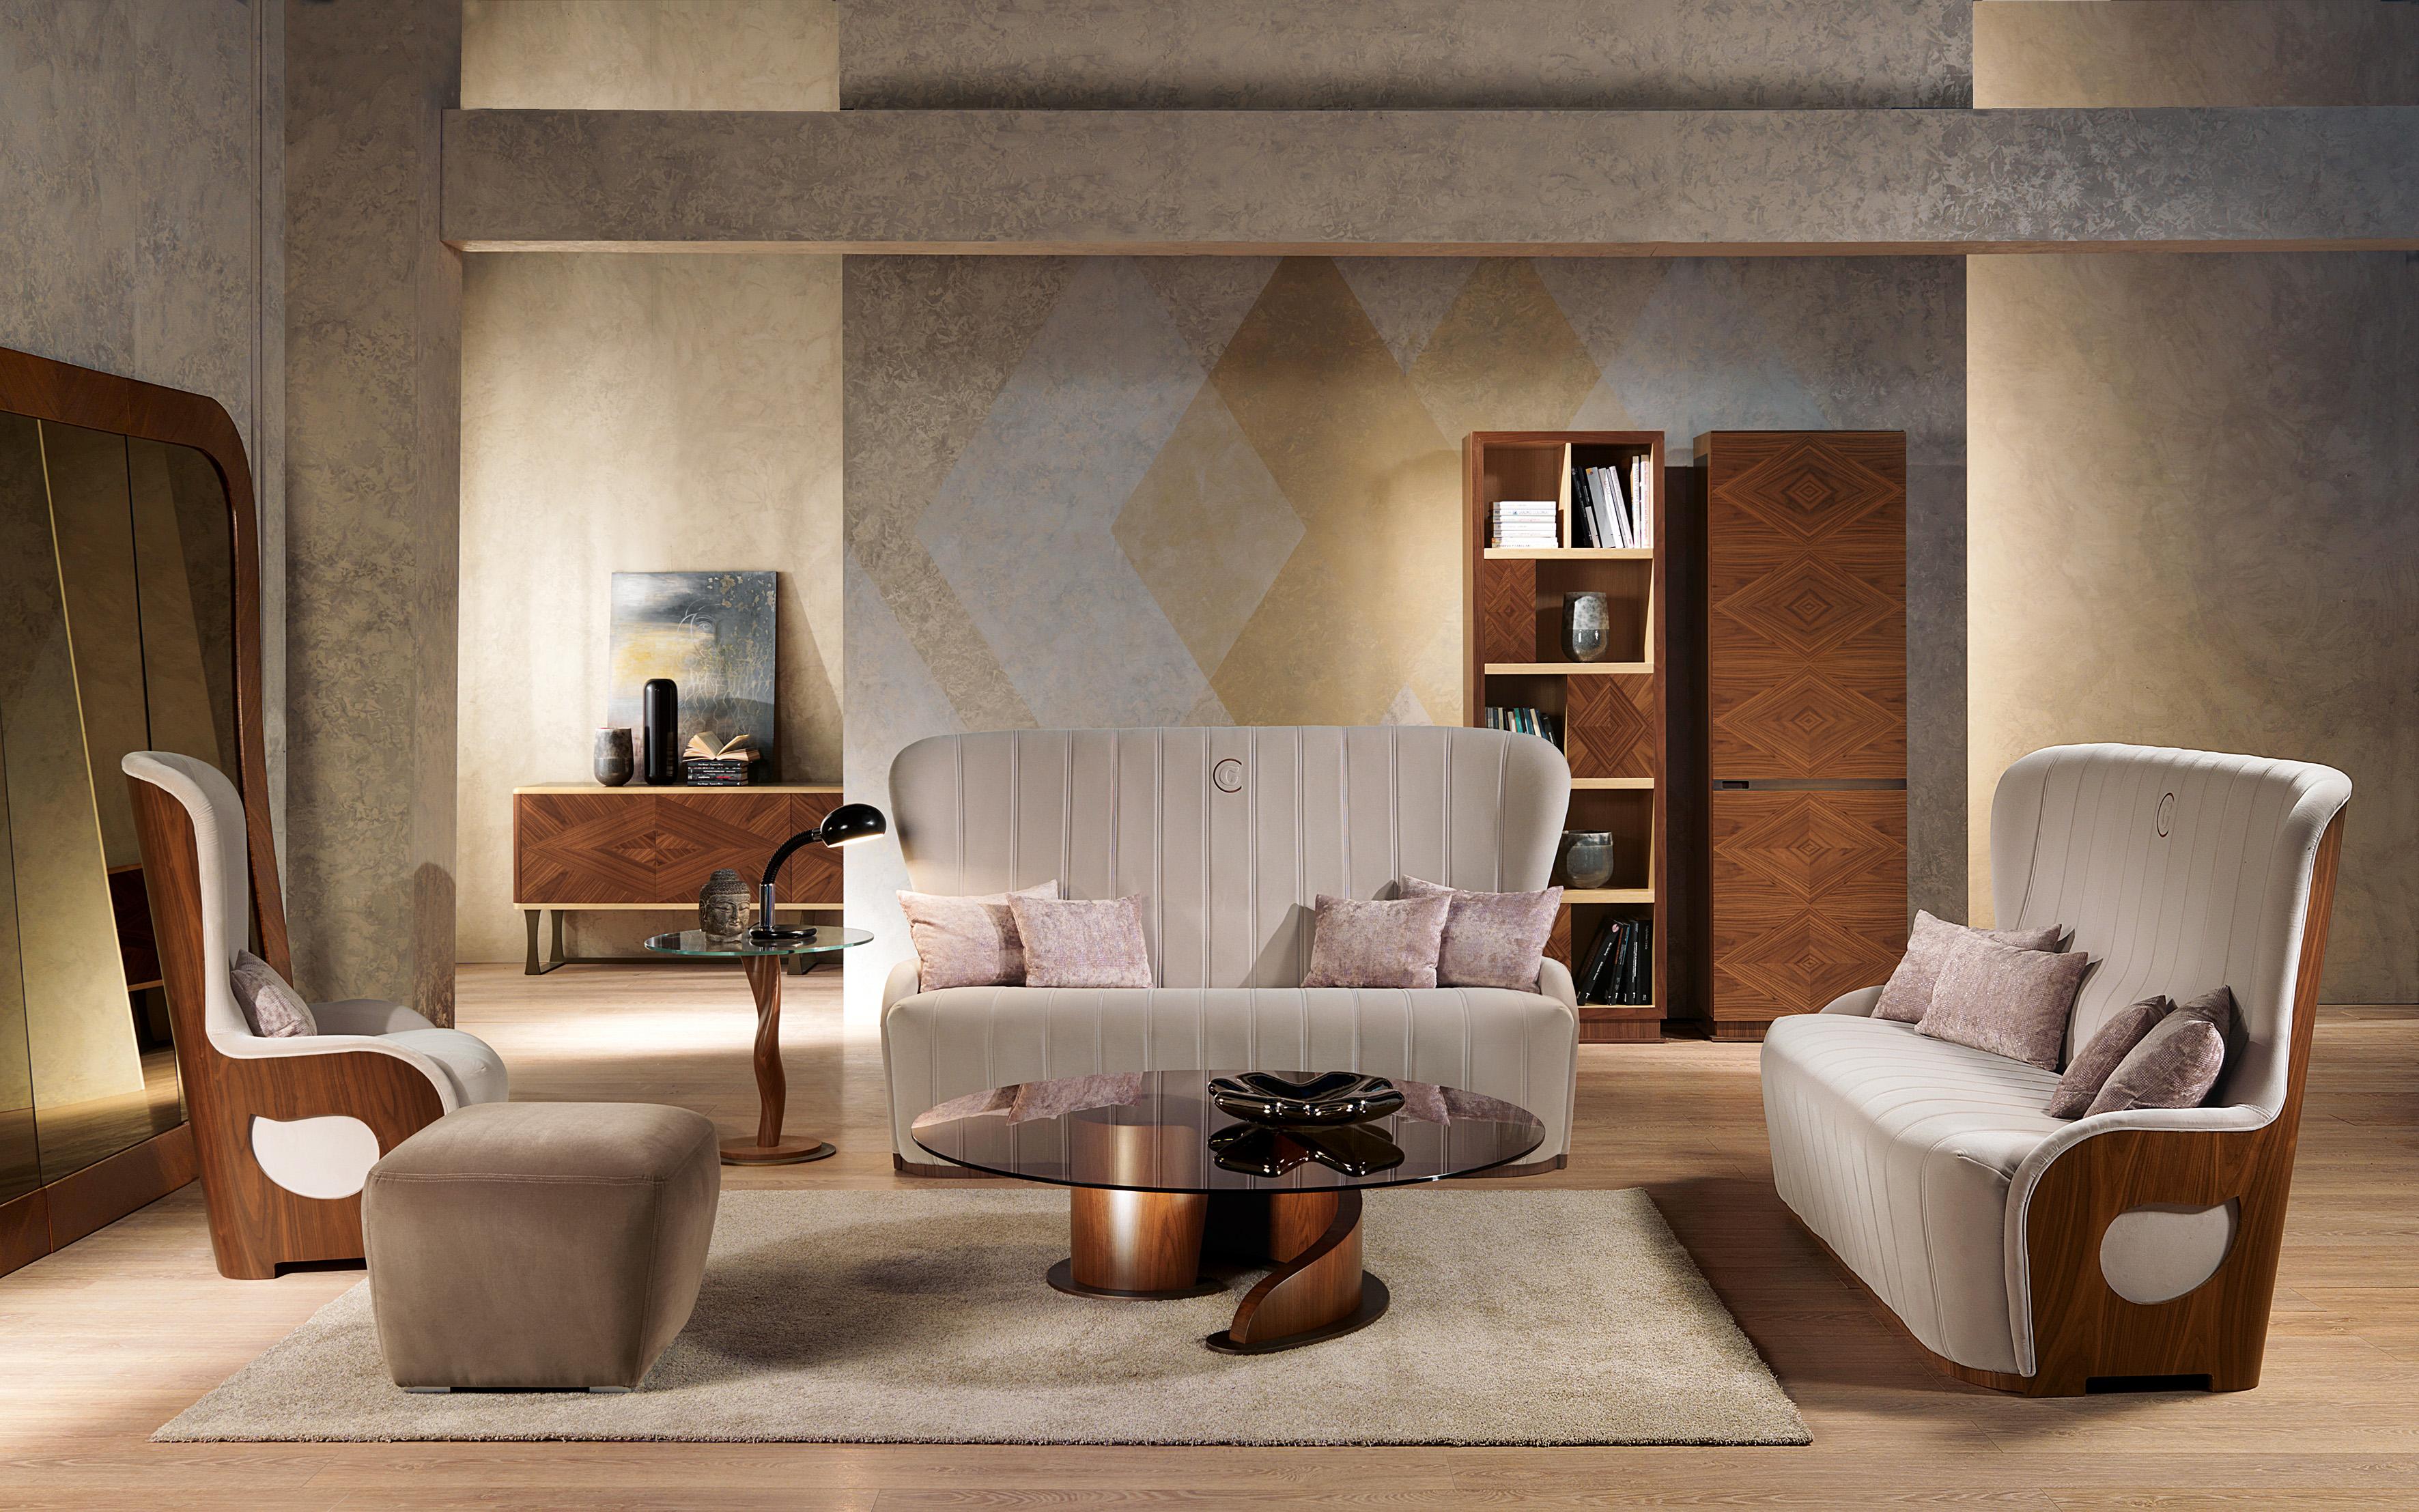 Dreisitziges Sofa mit Struktur aus Holz. Sichtbare Schale in natürlicher Canaletta-Nuss. Die Polsterung ist in Stoff oder Leder erhältlich.

Auf dem Foto in Samt präsentiert.